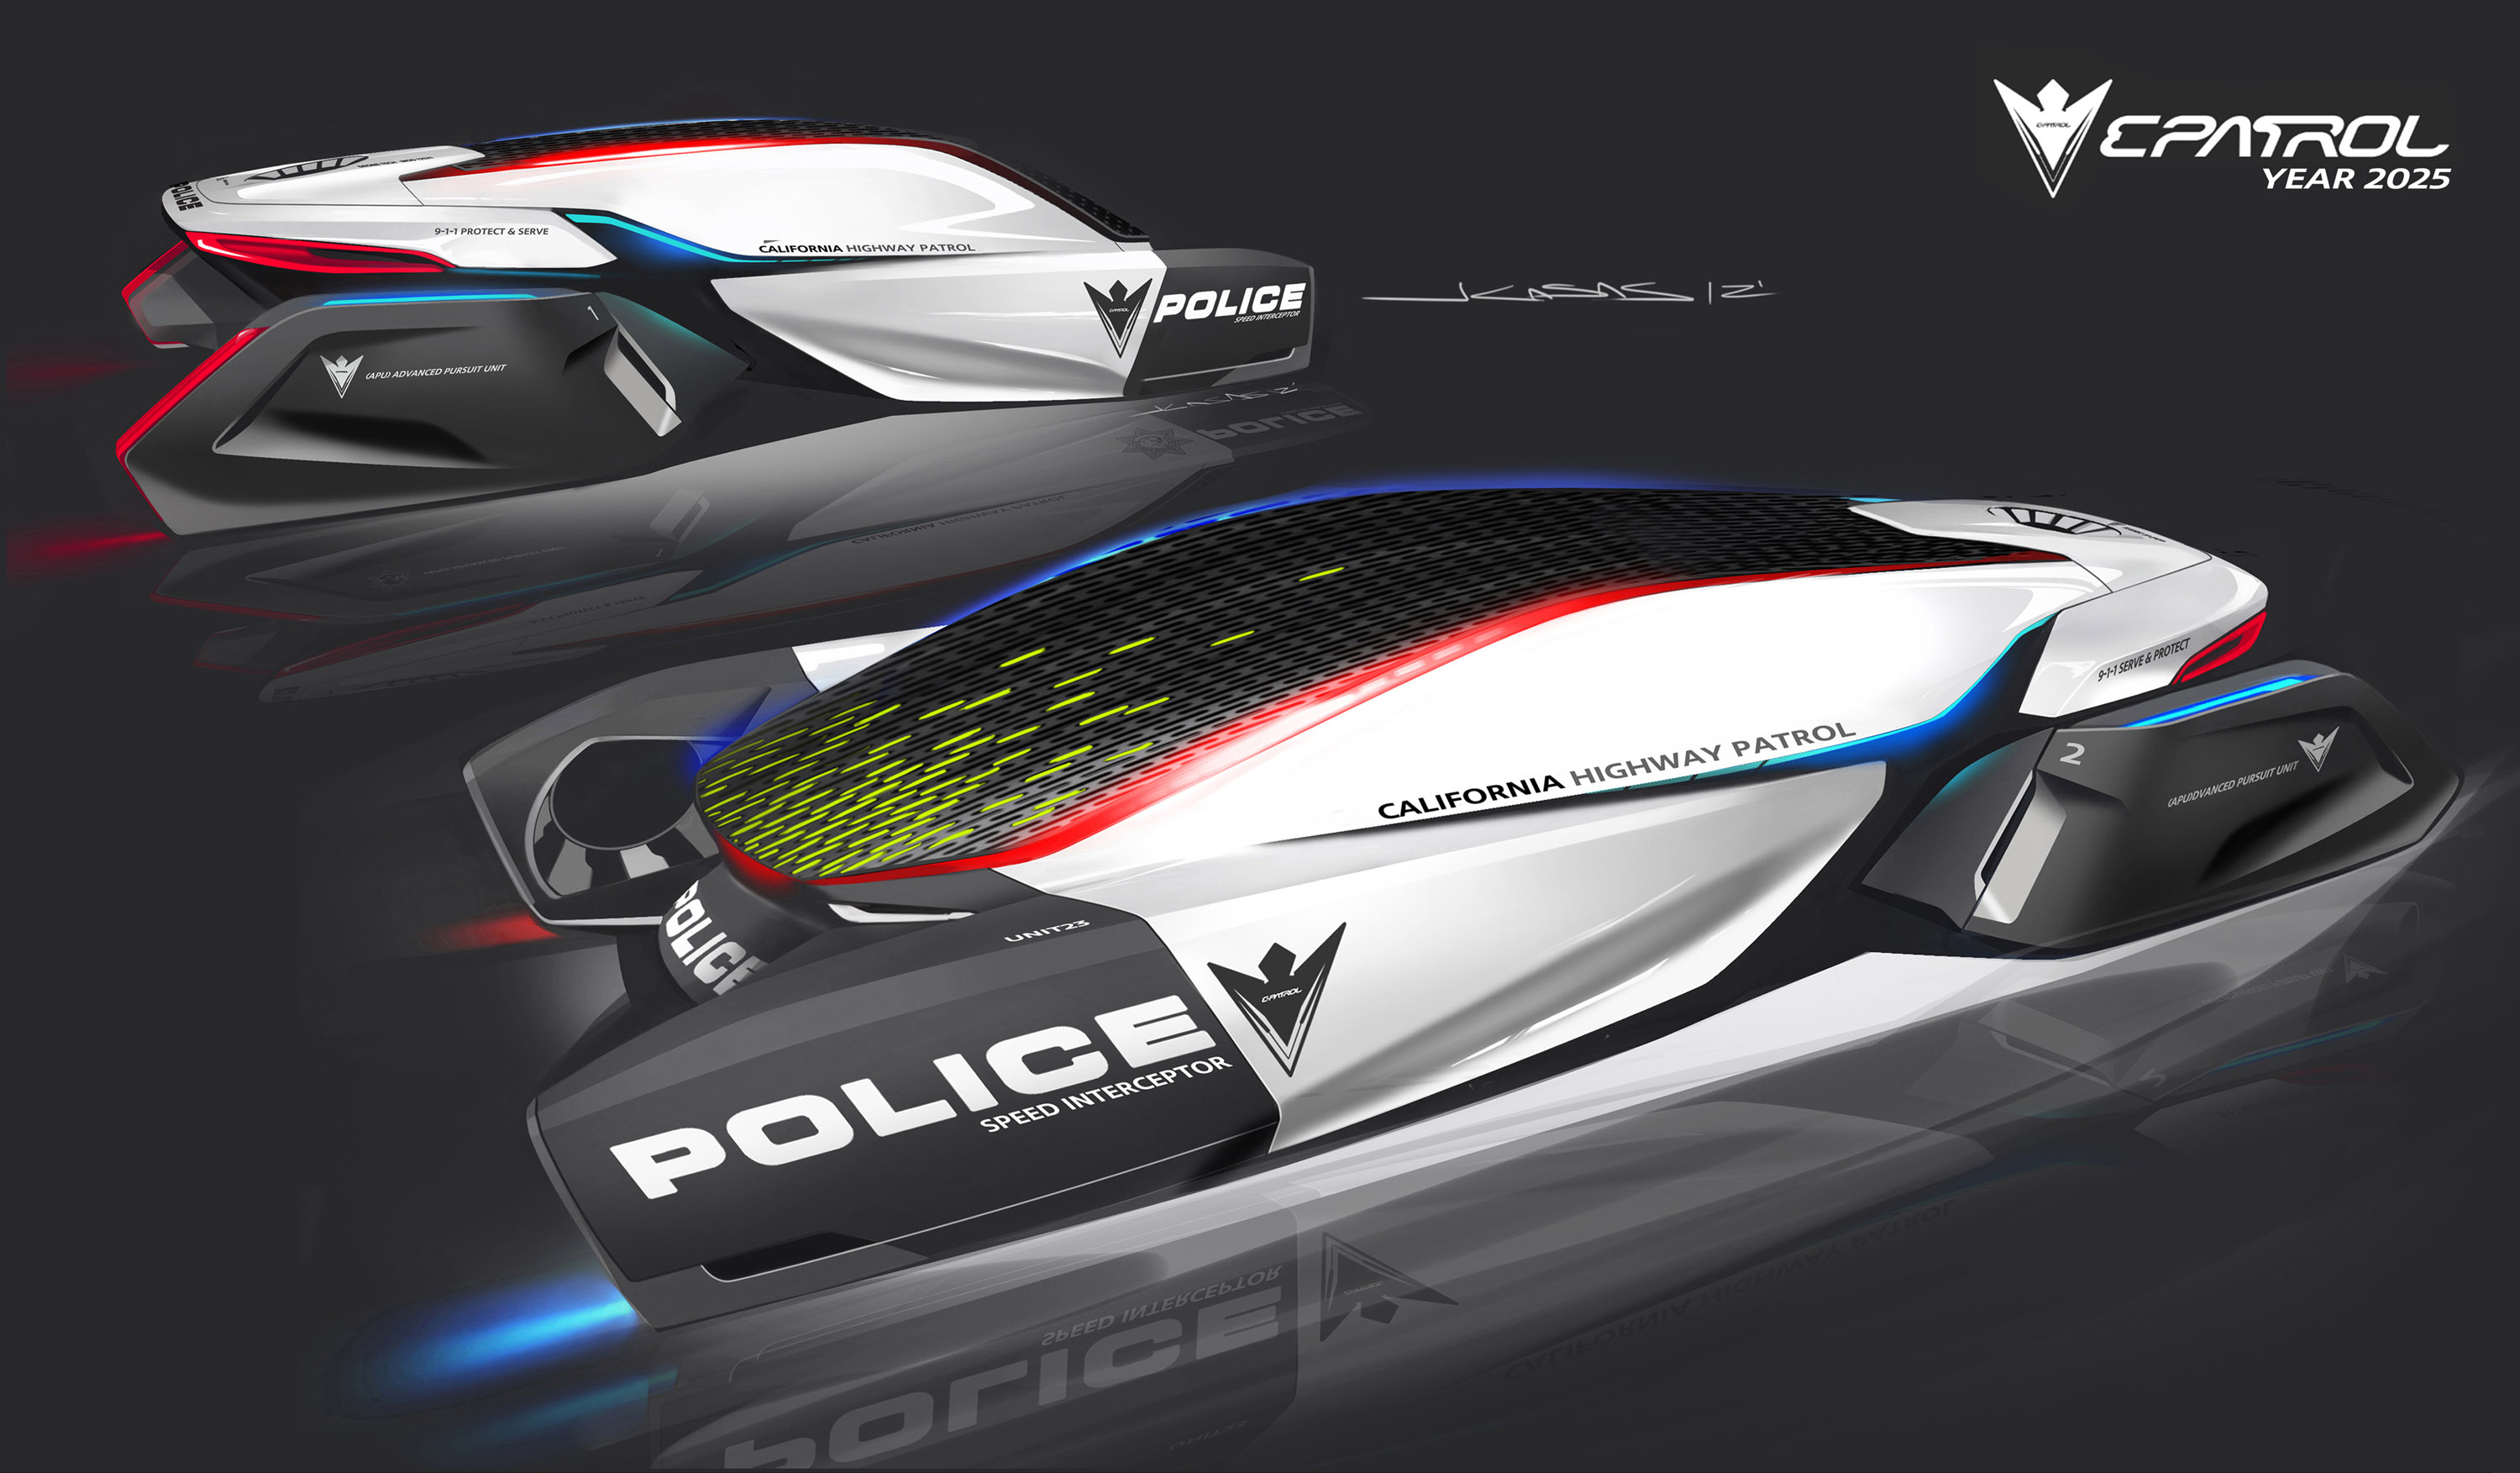 2025 год юбилейный. BMW 2025 года. Машина 2025 года. Машины полиции будущего. Машины будущего 2025.